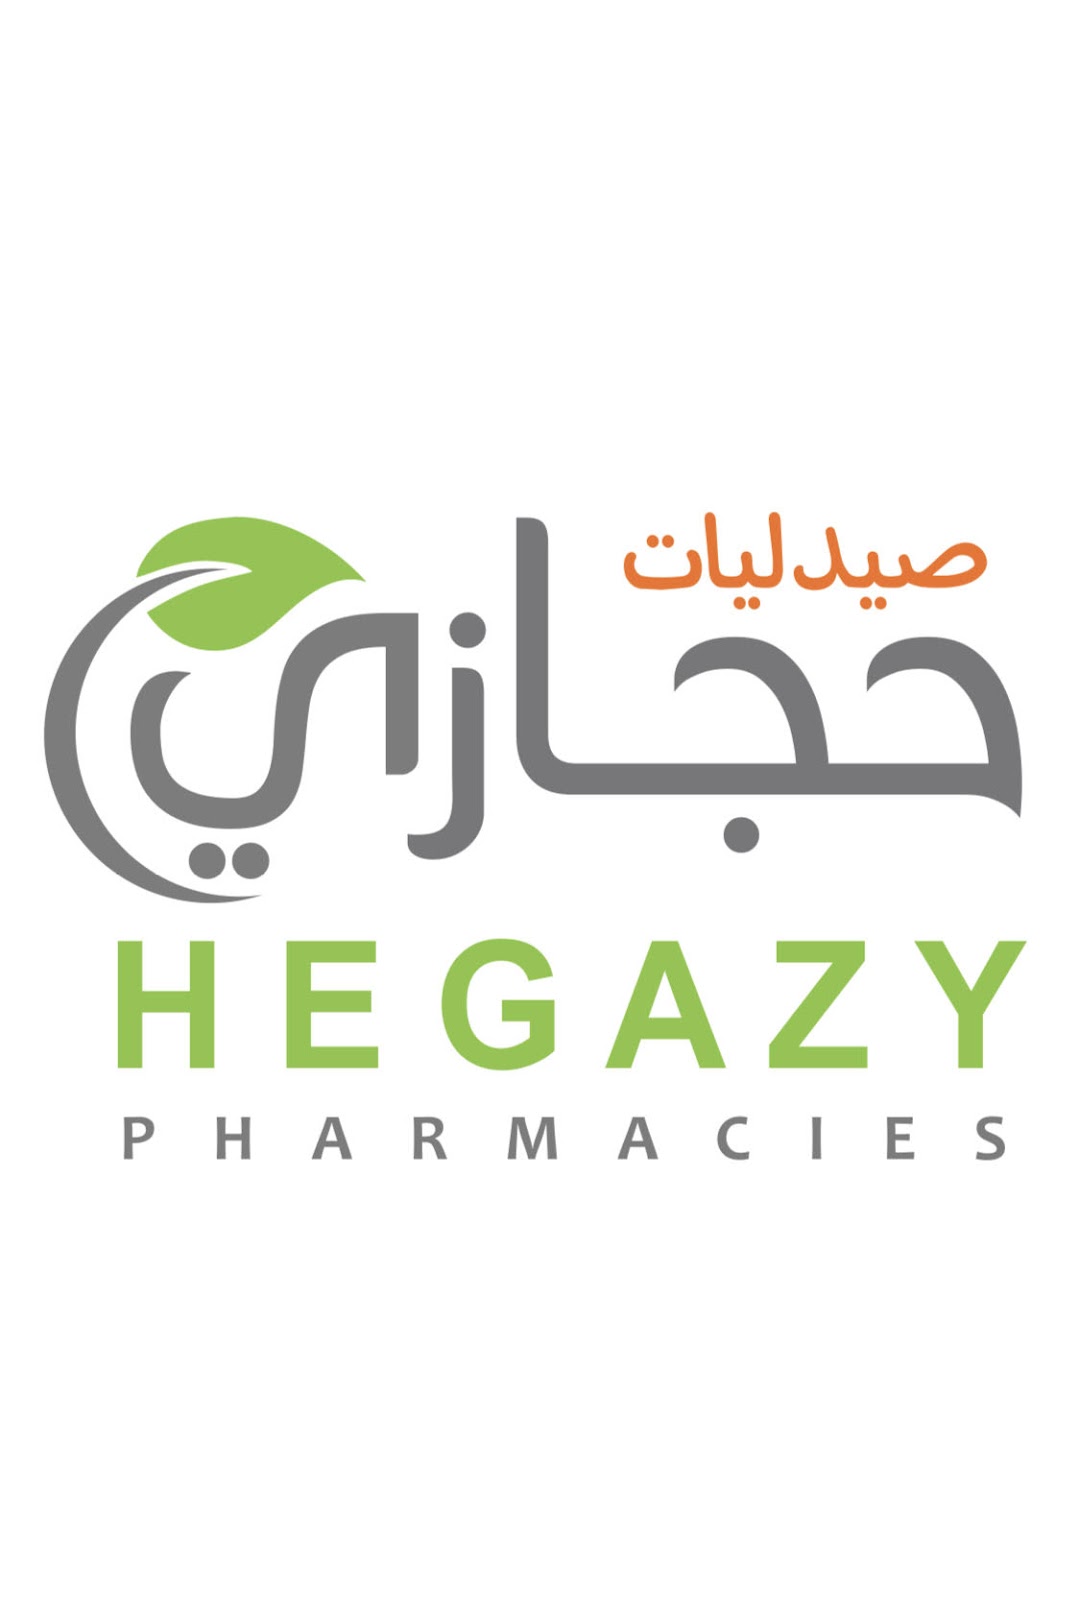 Hegazy pharmacy - صيدلية حجازى